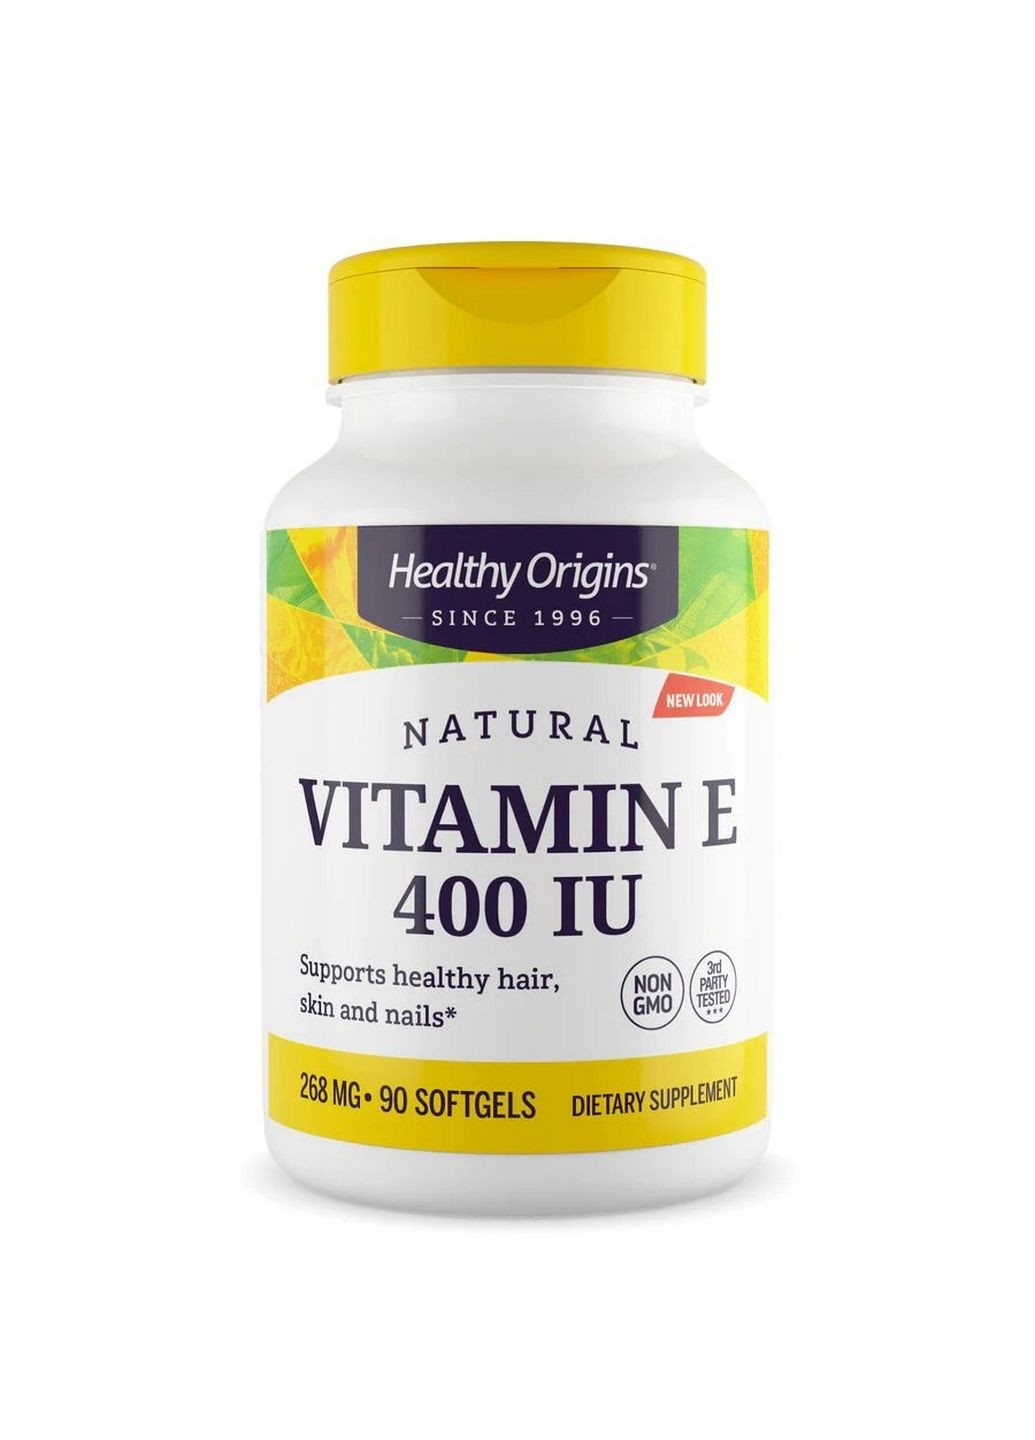 Витамины и минералы Vitamin E 400 IU, 90 капсул Healthy Origins (293342473)